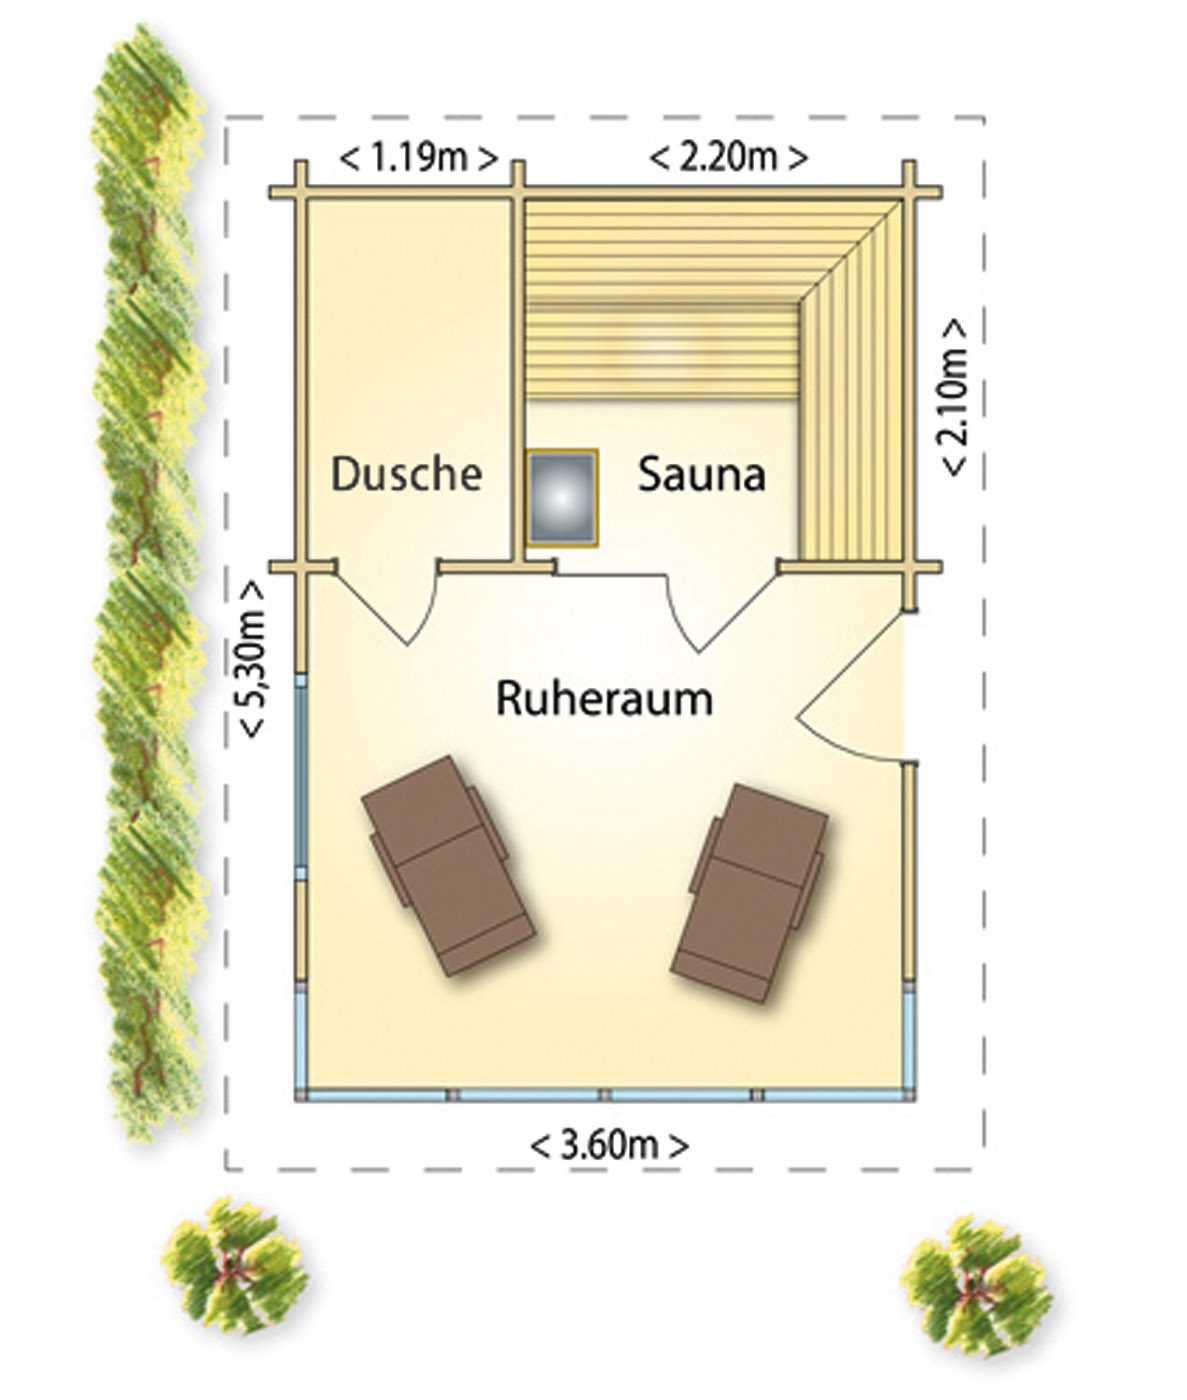 Gartensauna: Grundriss Beispiel für eine Aussensauna mit Ruheraum und Dusche